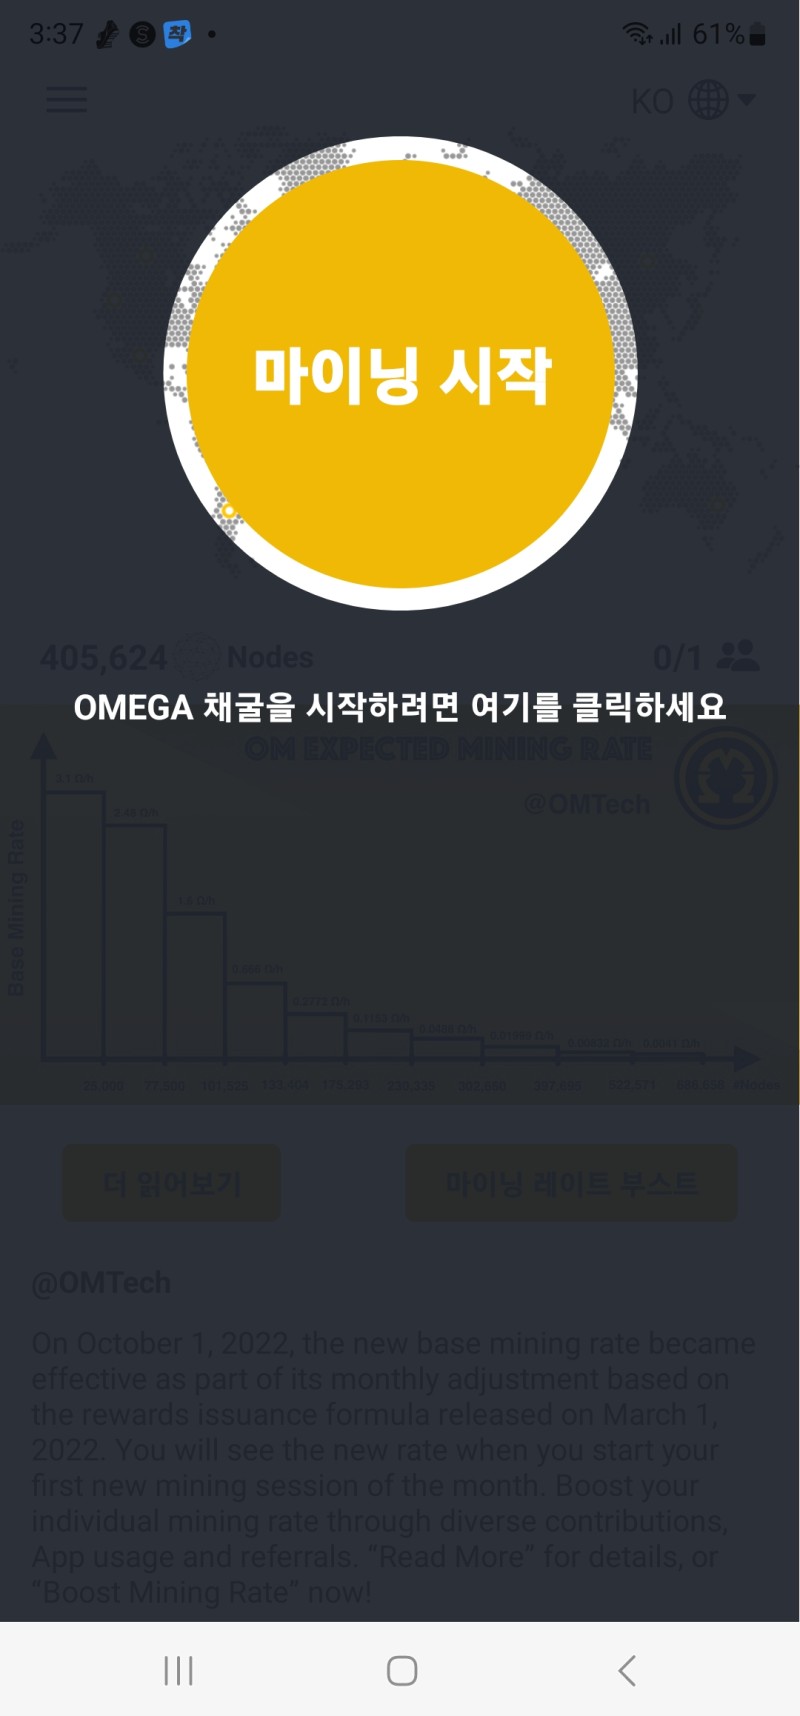 오메가 네트워크 무료채굴 스타트 페이지